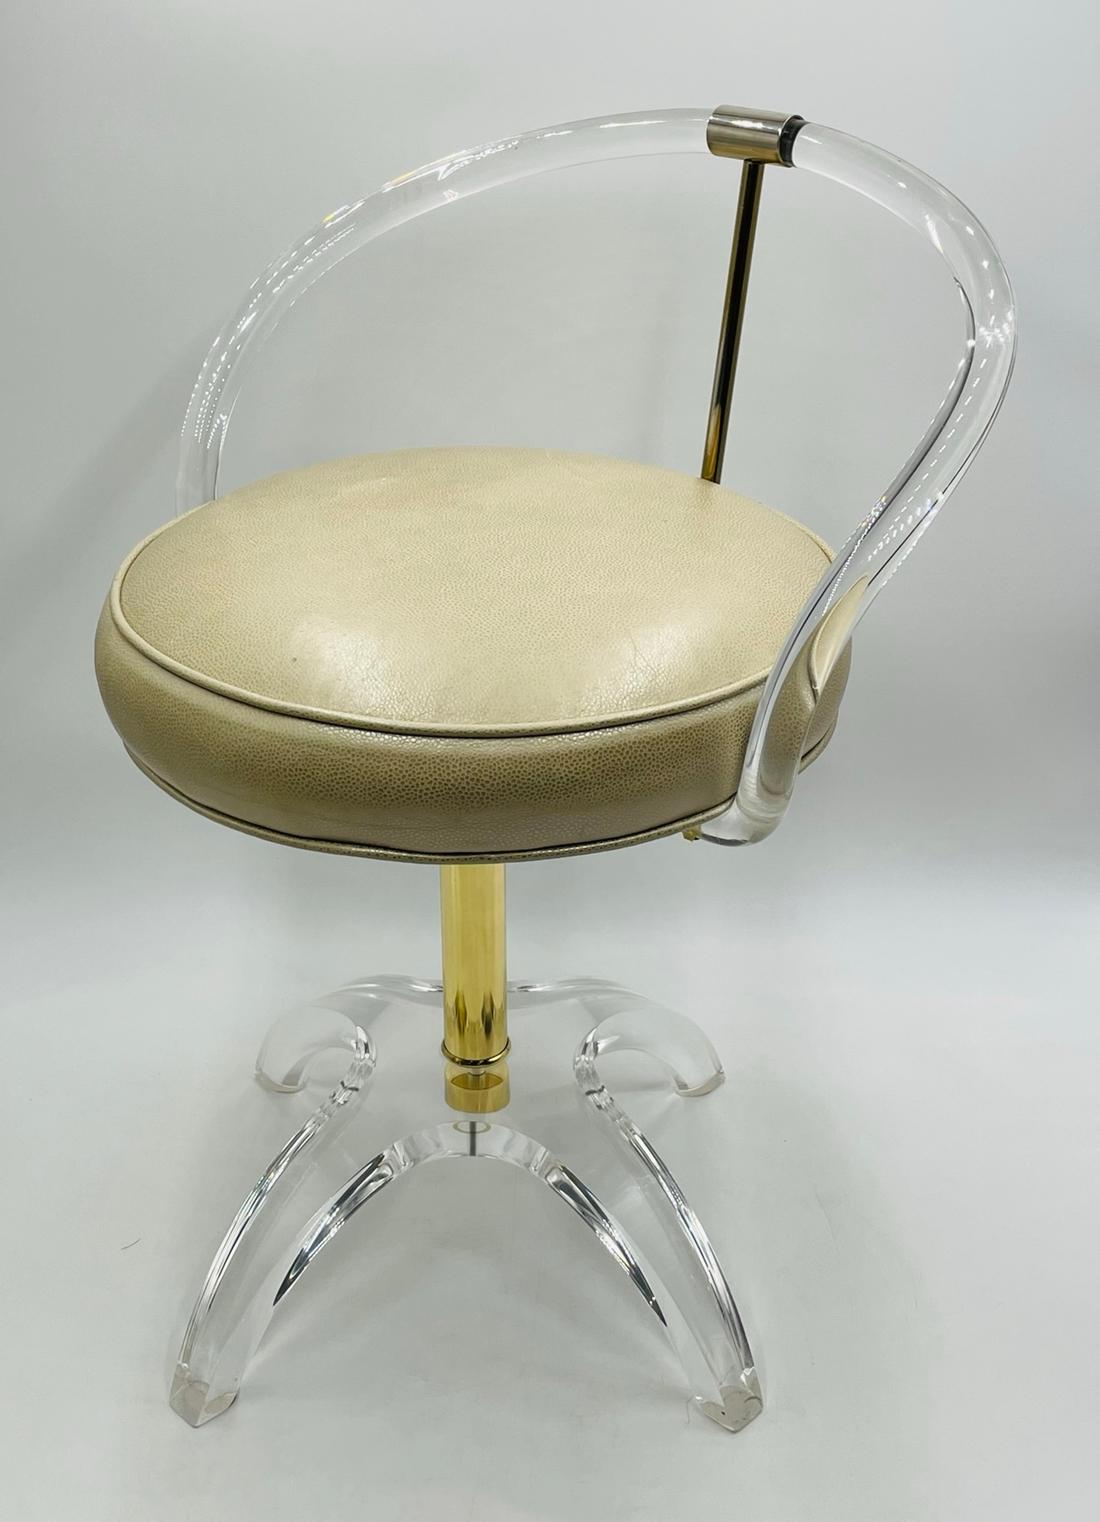 Superbe fauteuil de toilette en Lucite et laiton conçu par Charles Hollis Jones. Le premier modèle original était en laiton et avait été commandé par Lucille Ball. La chaise est en bon état vintage.

Mesures :
25,50 pouces de haut x 19,50 pouces de